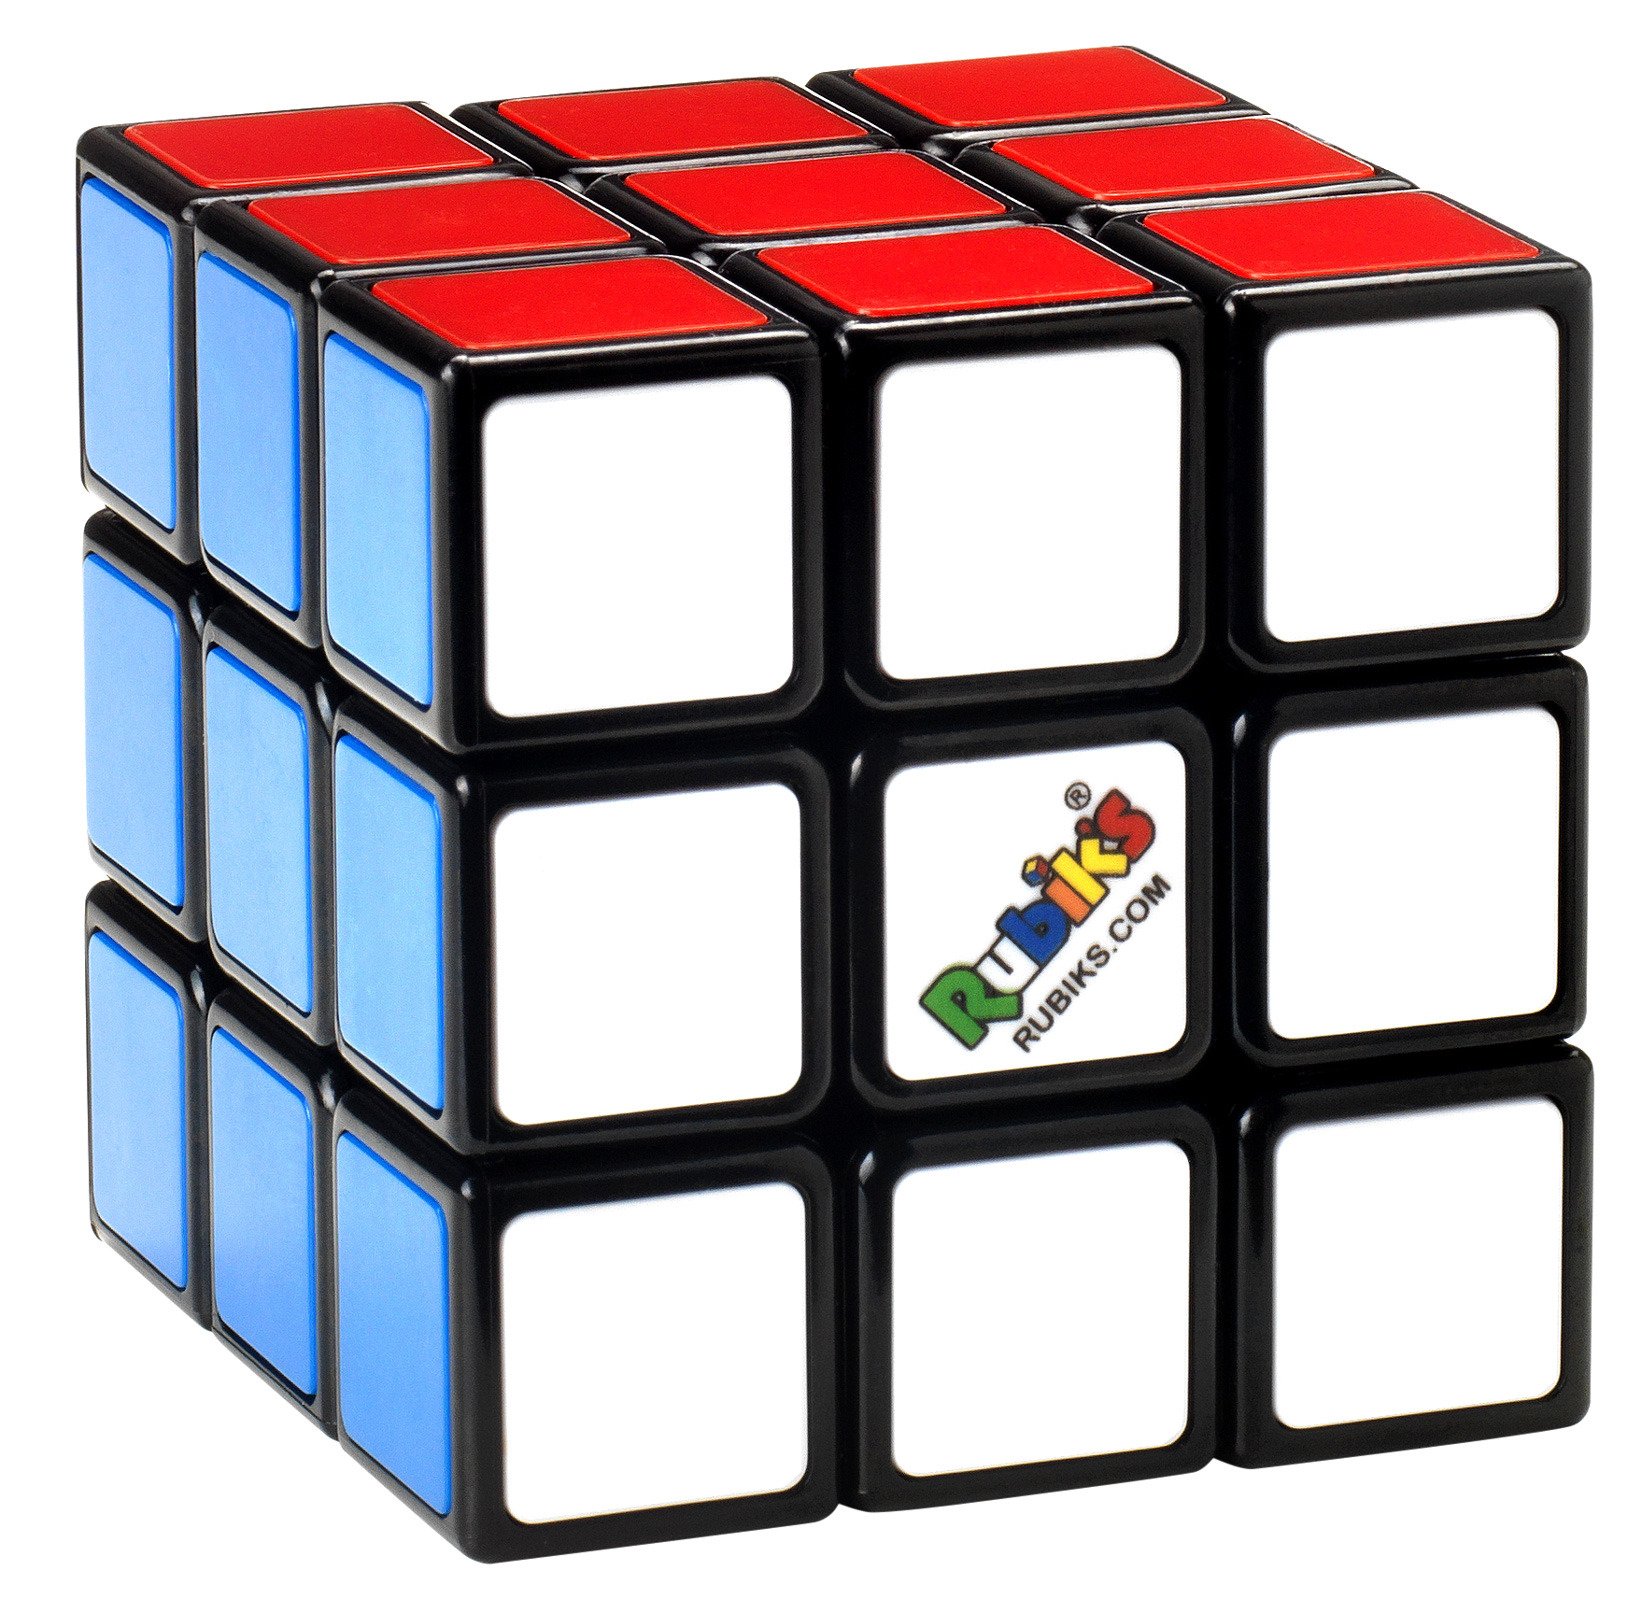 Algorytmy Do Ukladania Kostki Rubika 3x3x3 Kostka Rubika 3x3x3 (Open Box) | SPRZEDAŻ HURTOWA \ Rubik's | G3 Poland